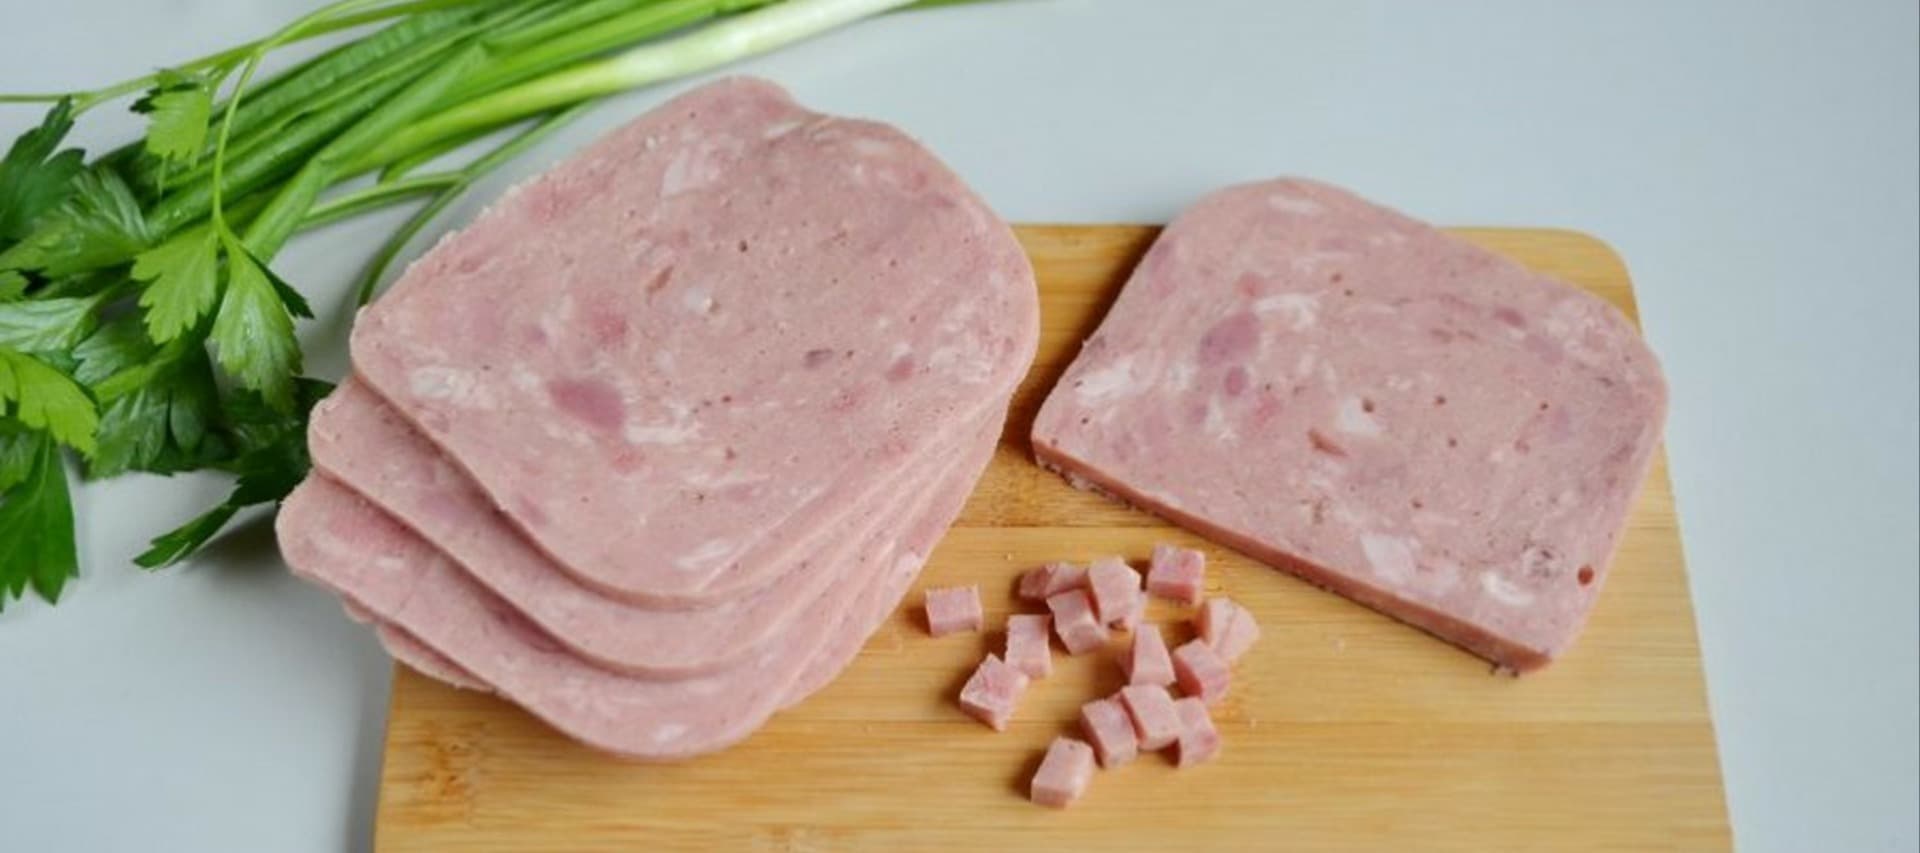 Фото новости: "«Аби» изъял партию колбасной продукции с геномом африканской чумы свиней"